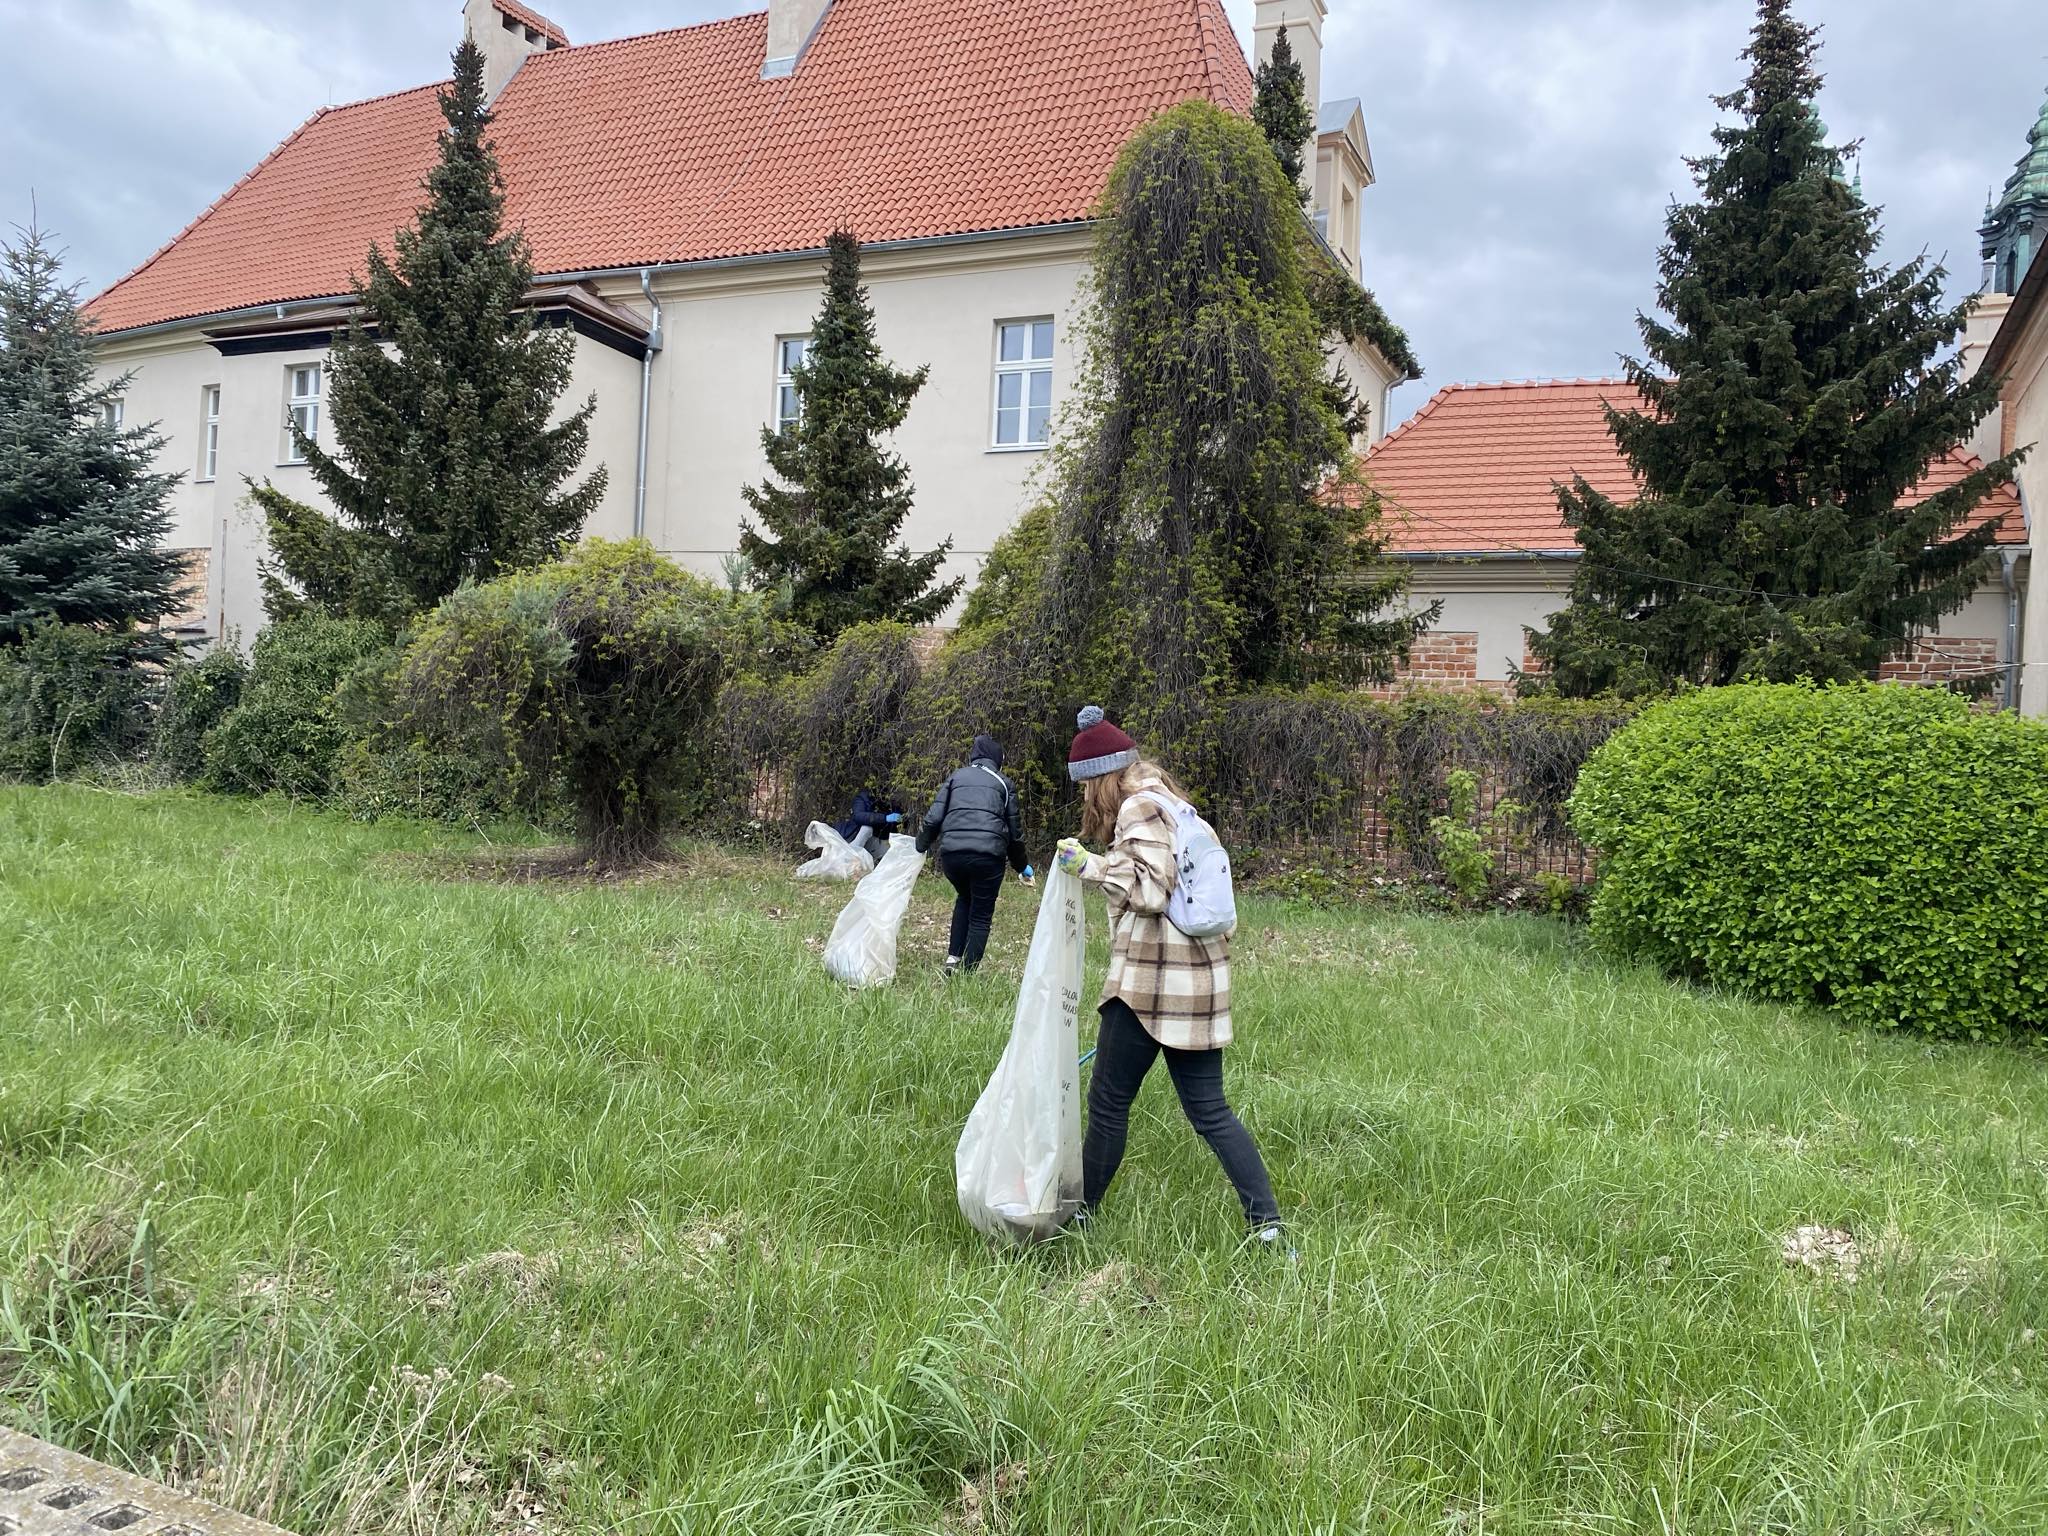 Trzy osoby na trawniku zbierają śmieci do worków